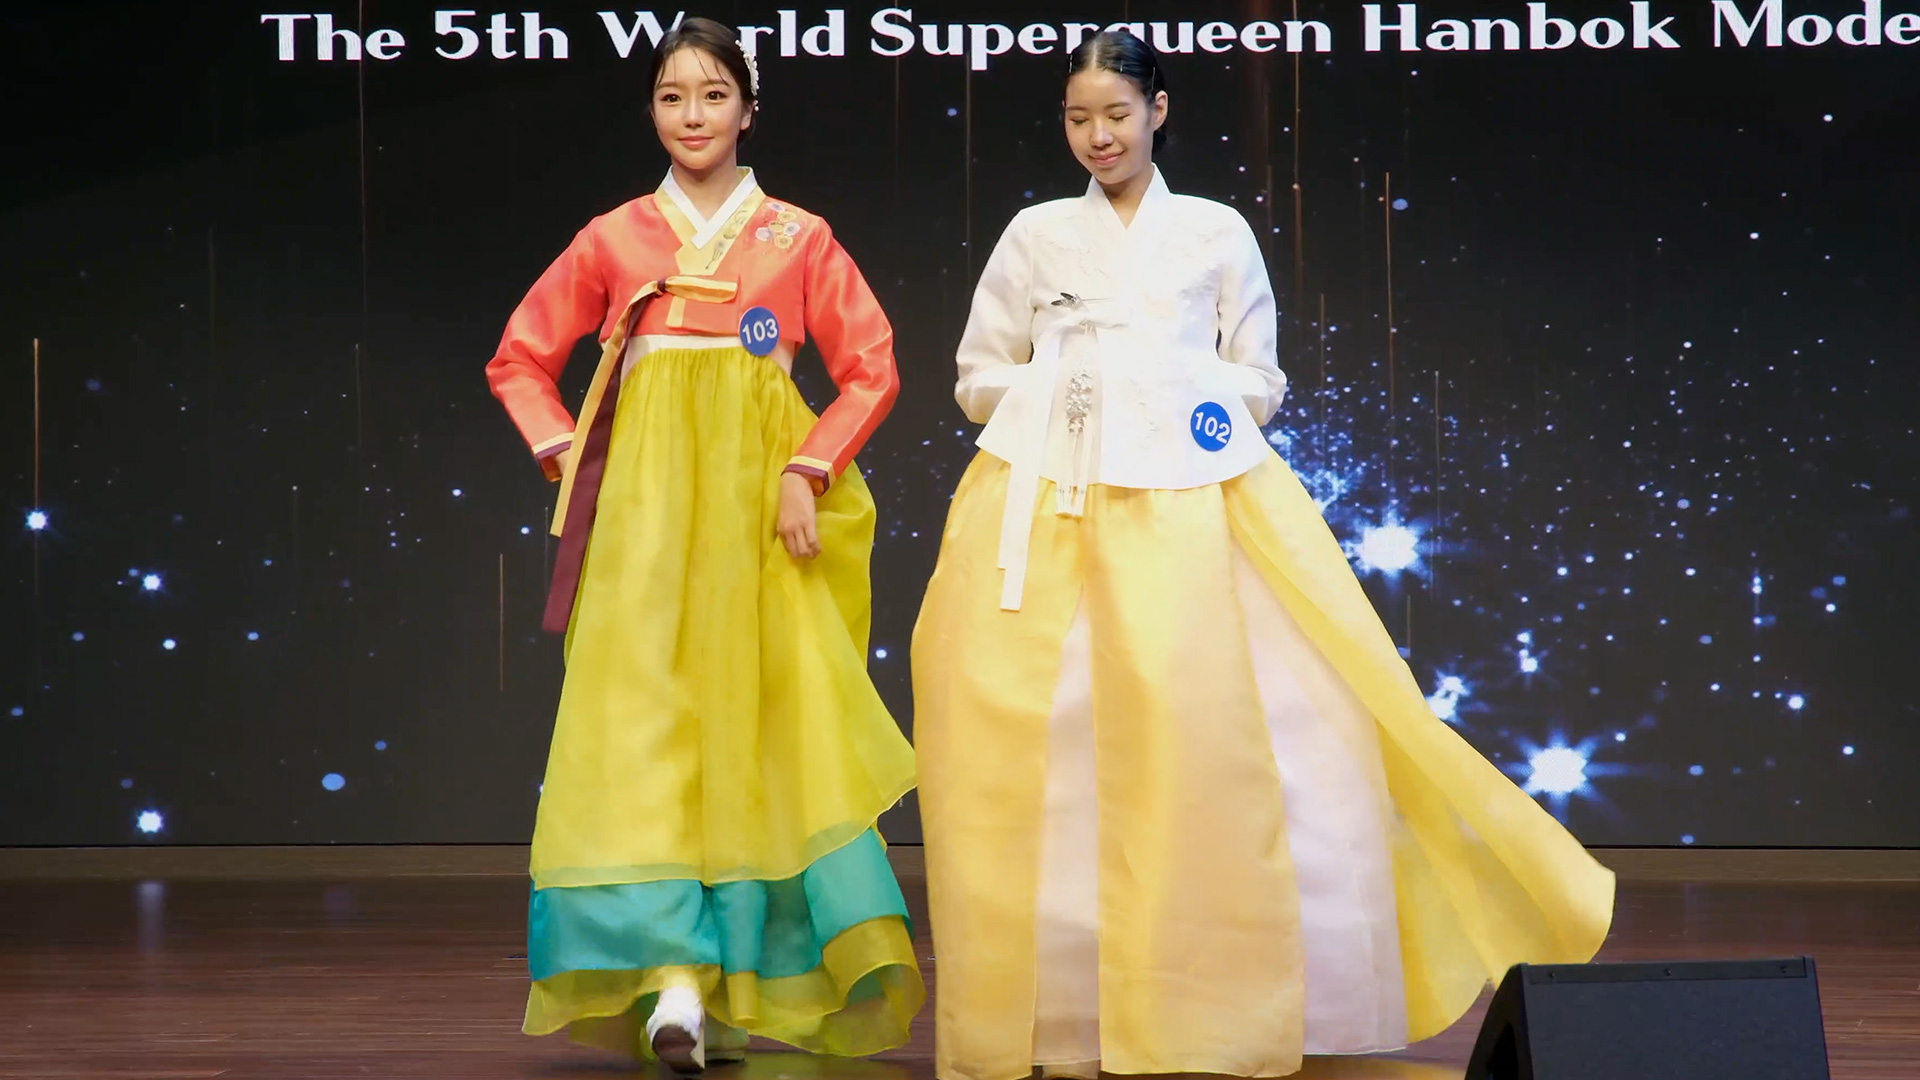 한복을 입은 참가자들 | 박재현/에포크타임스